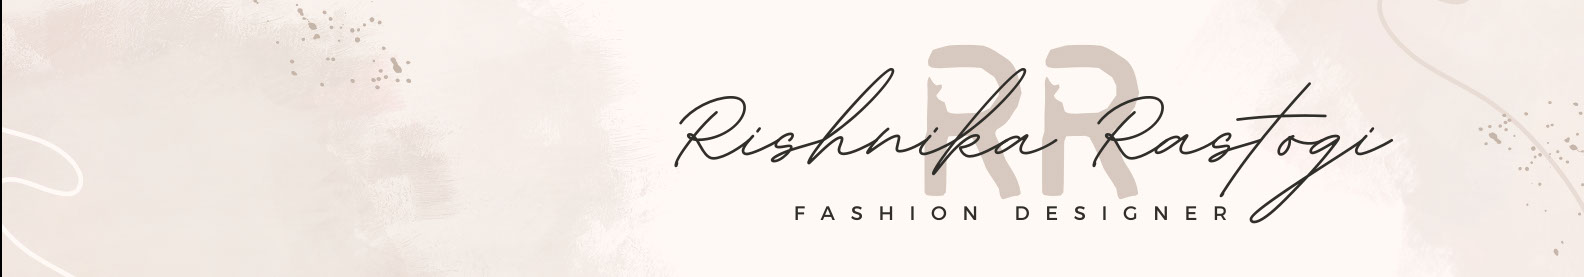 Rishnika Rastogi's profile banner